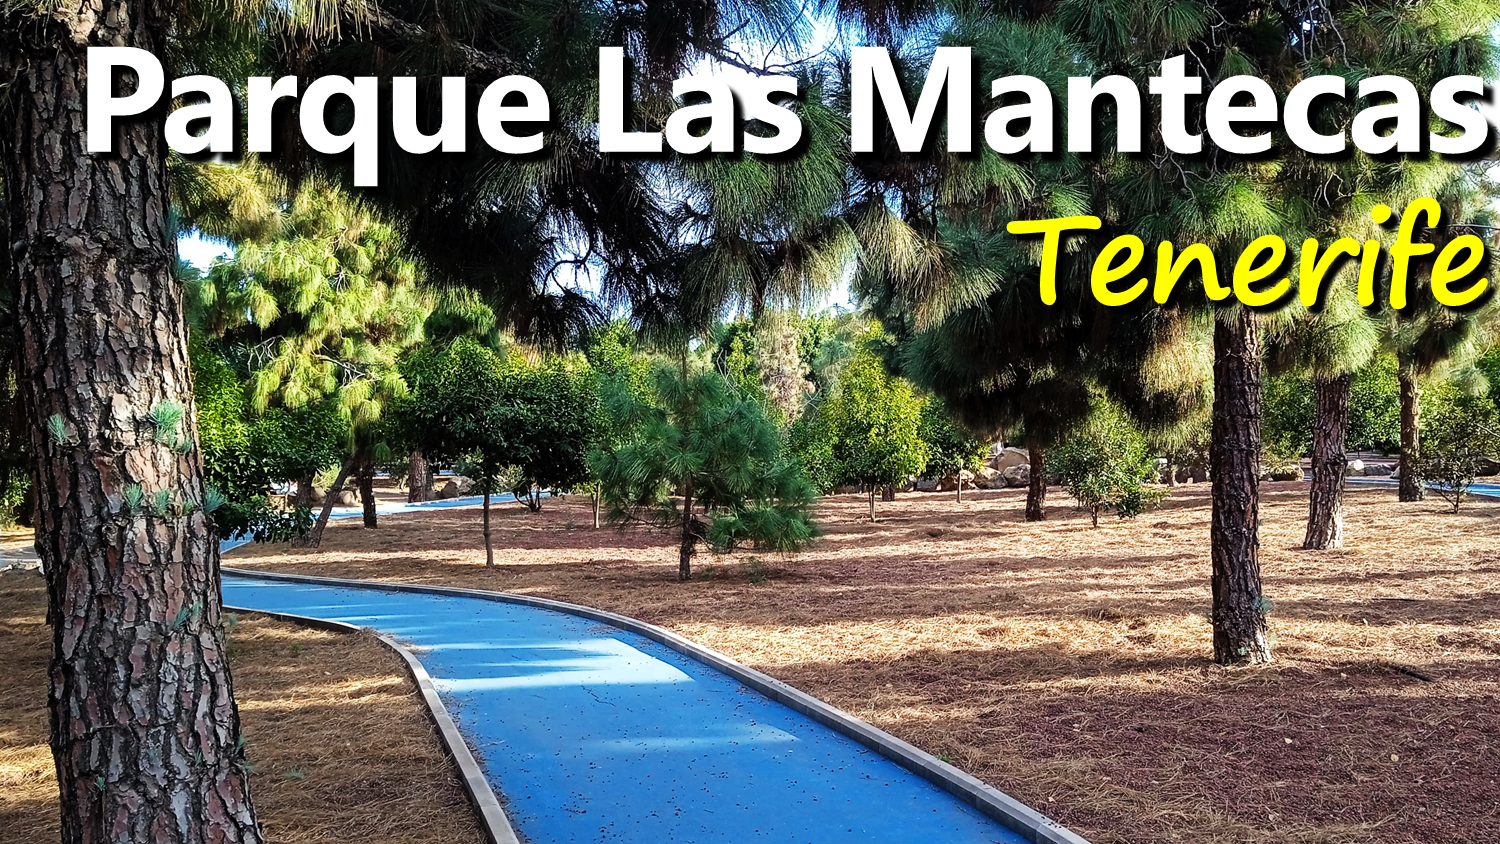 Visita al Parque Las Mantecas Tenerife Visiting Las Mantecas Park.png